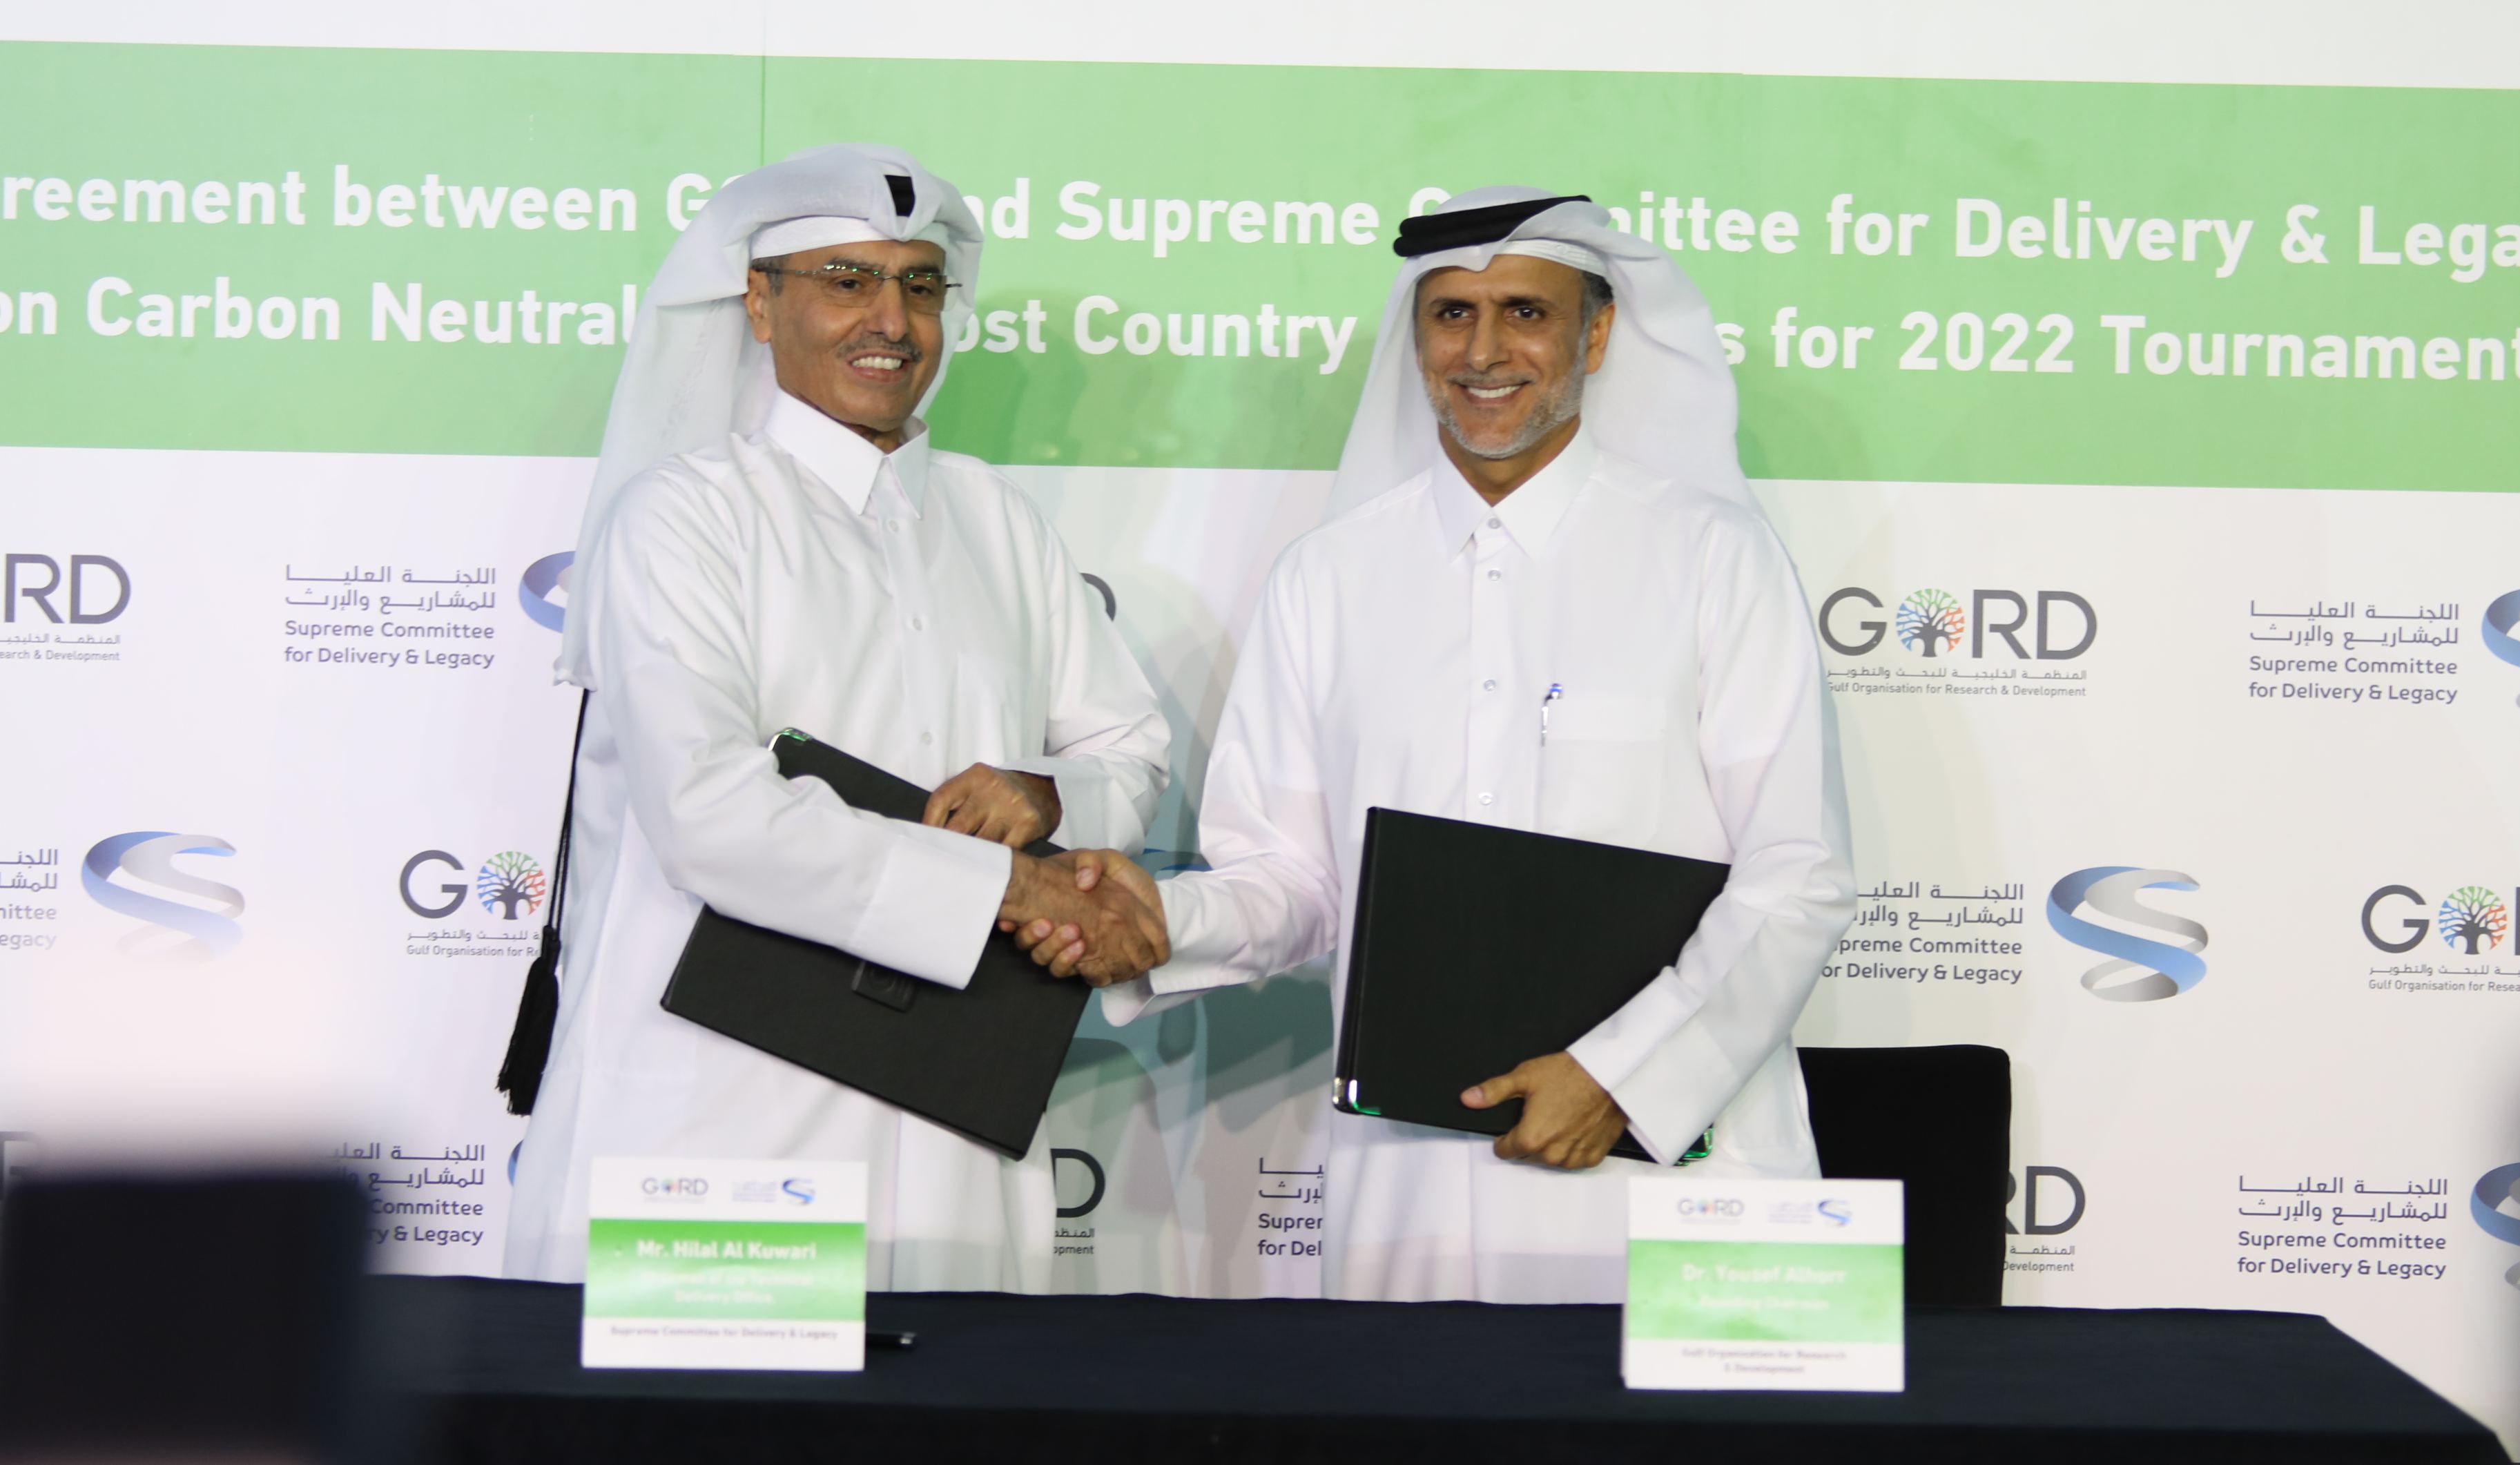 Hilal al-Kuwari and Dr Yousef Mohamed AlHorr after signing the agreement.